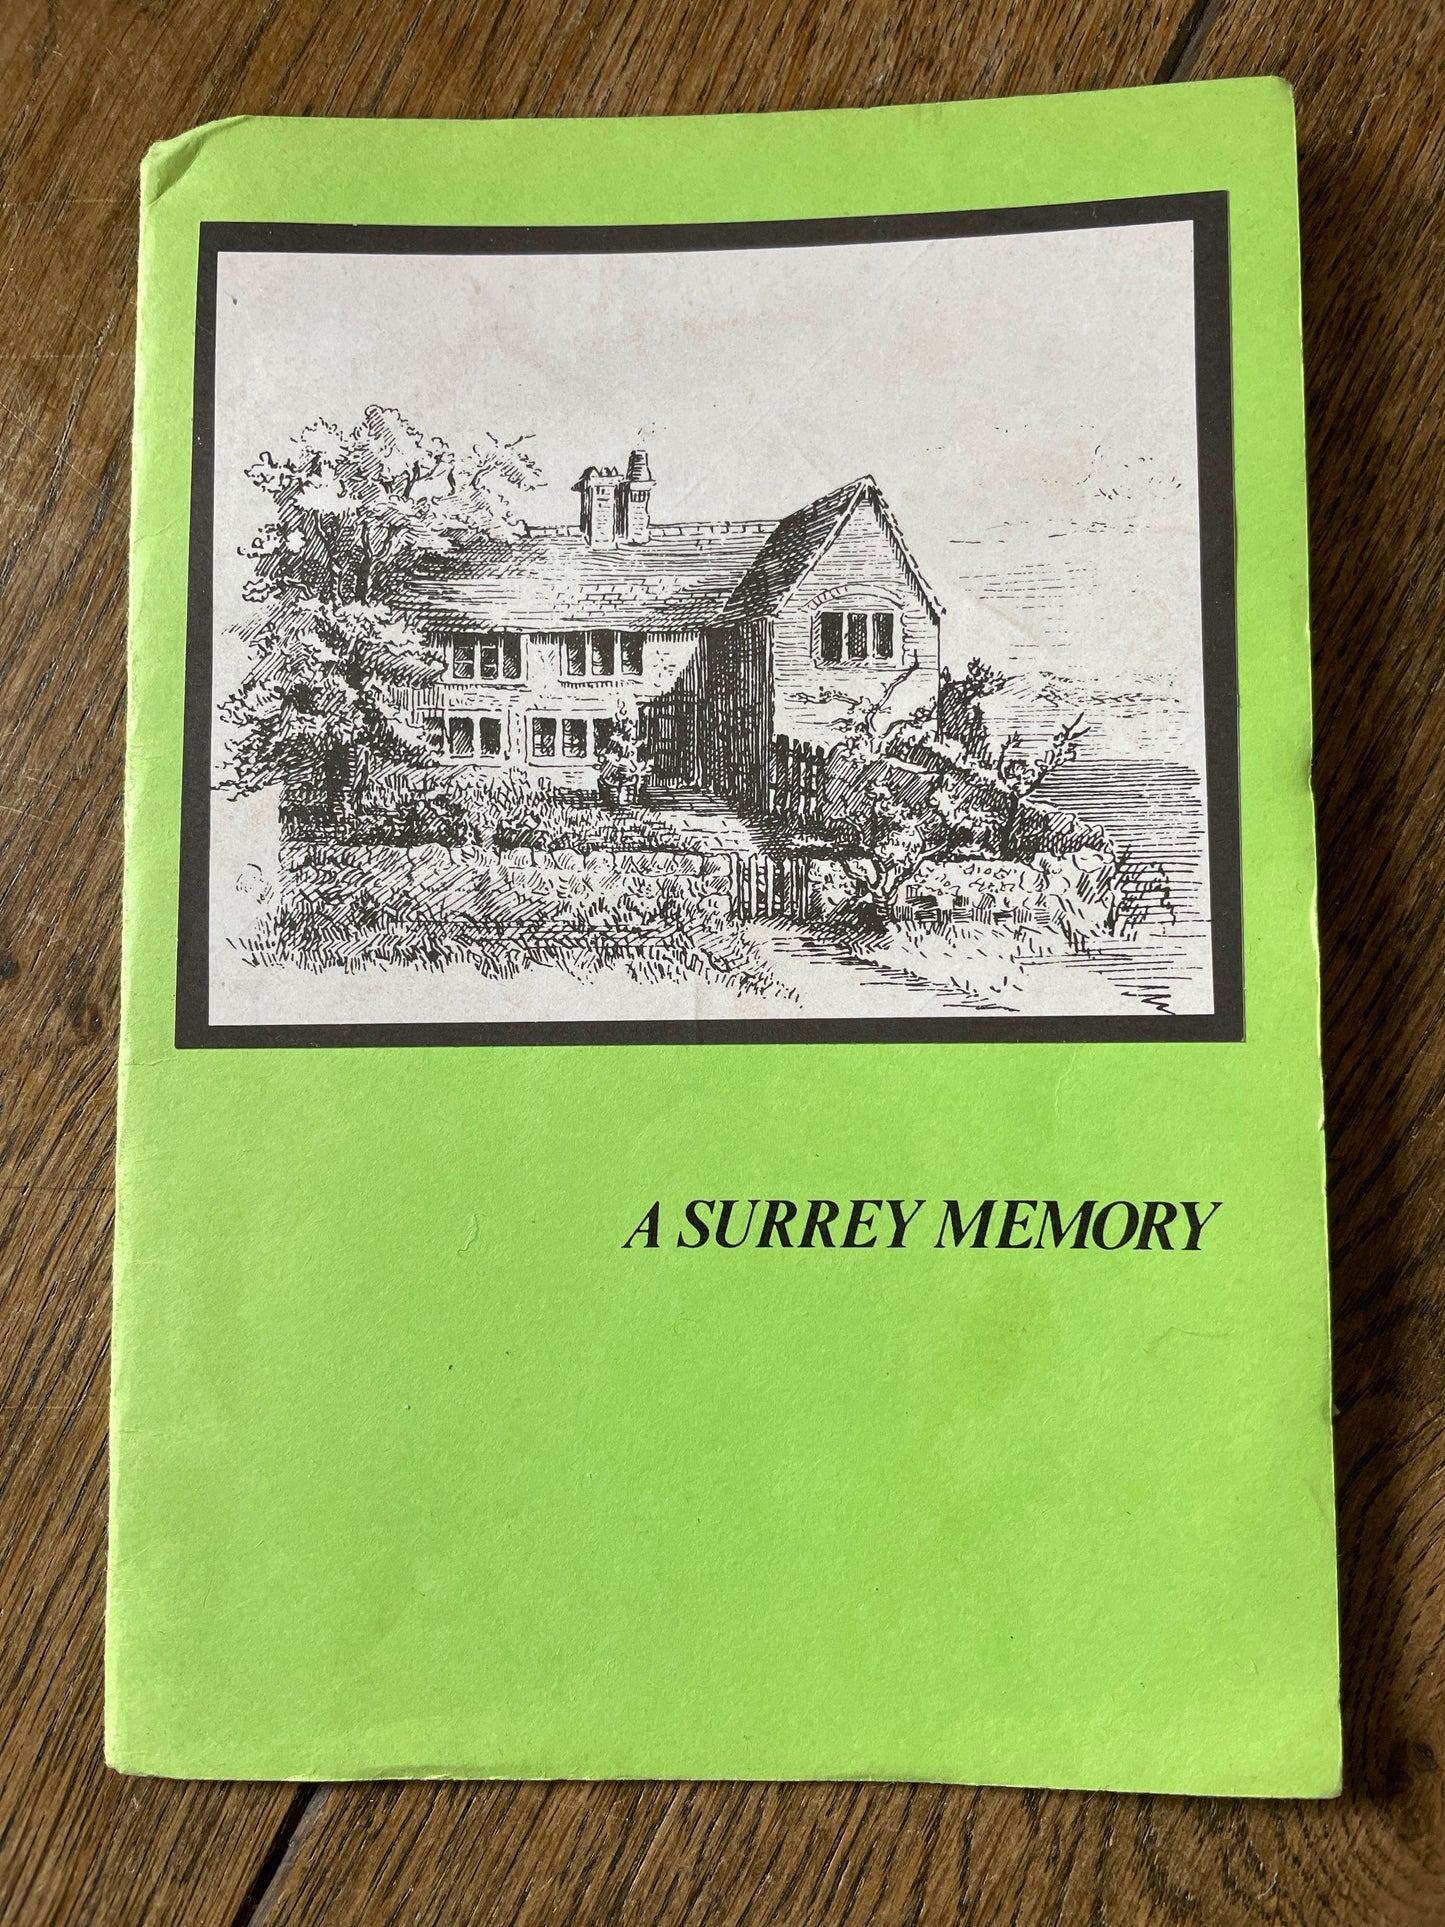 Vintage A Surrey Memory of 1851 by William Nash